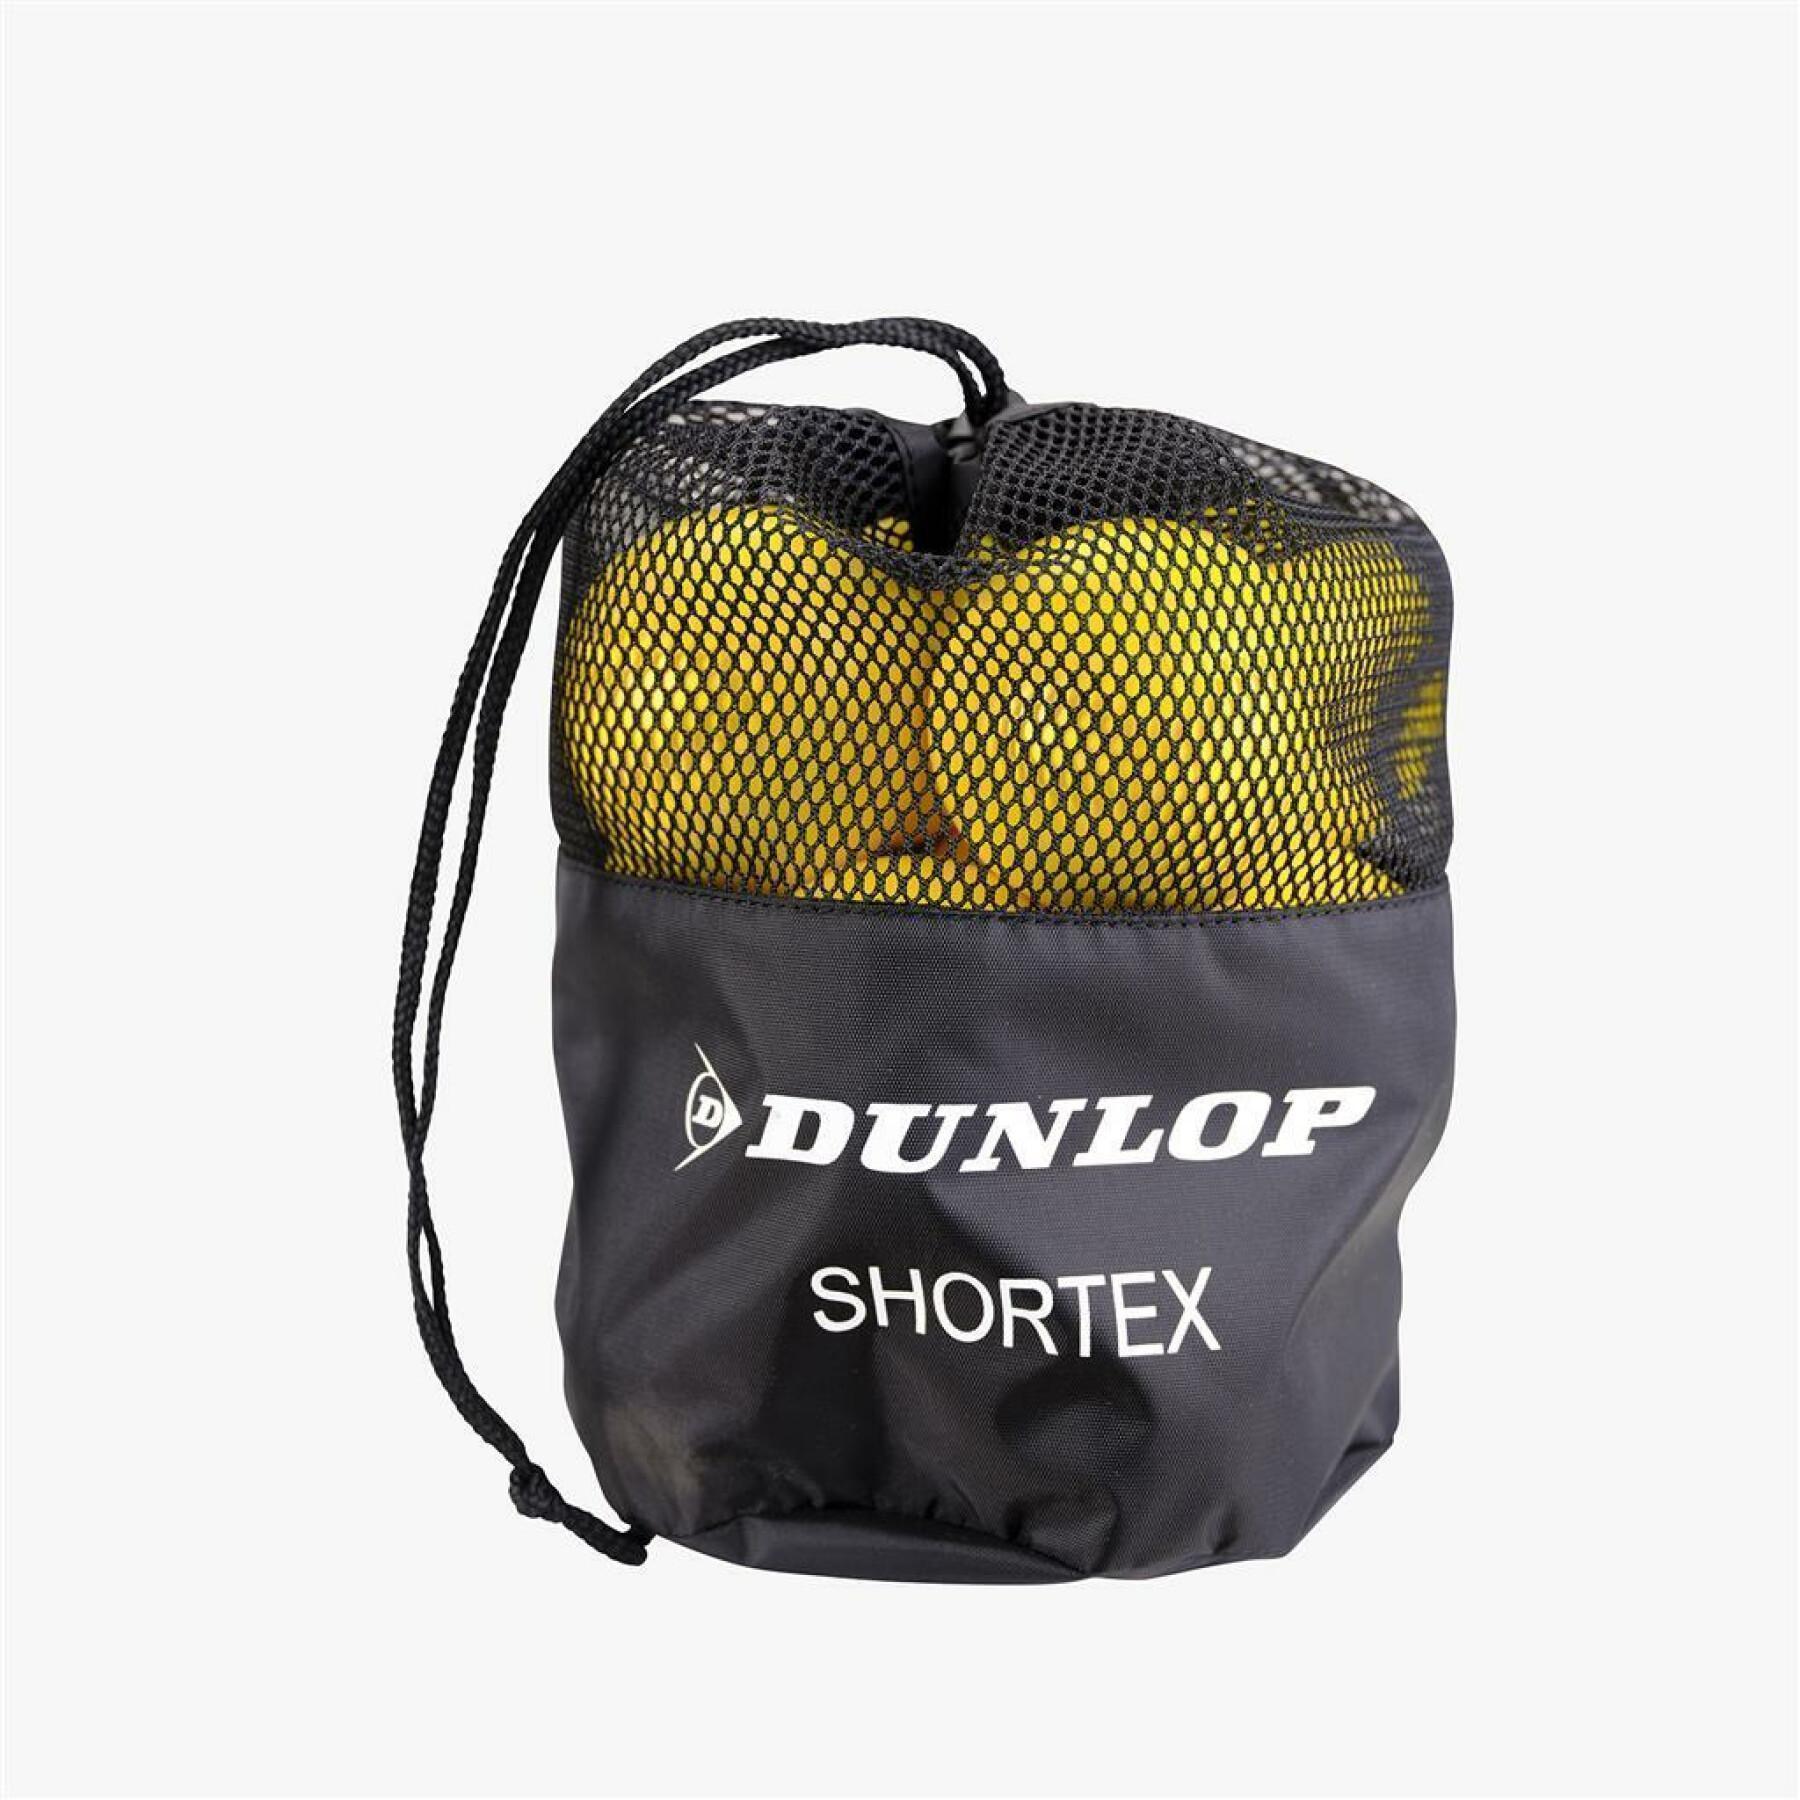 Juego de 12 pelotas de tenis Dunlop Shortex